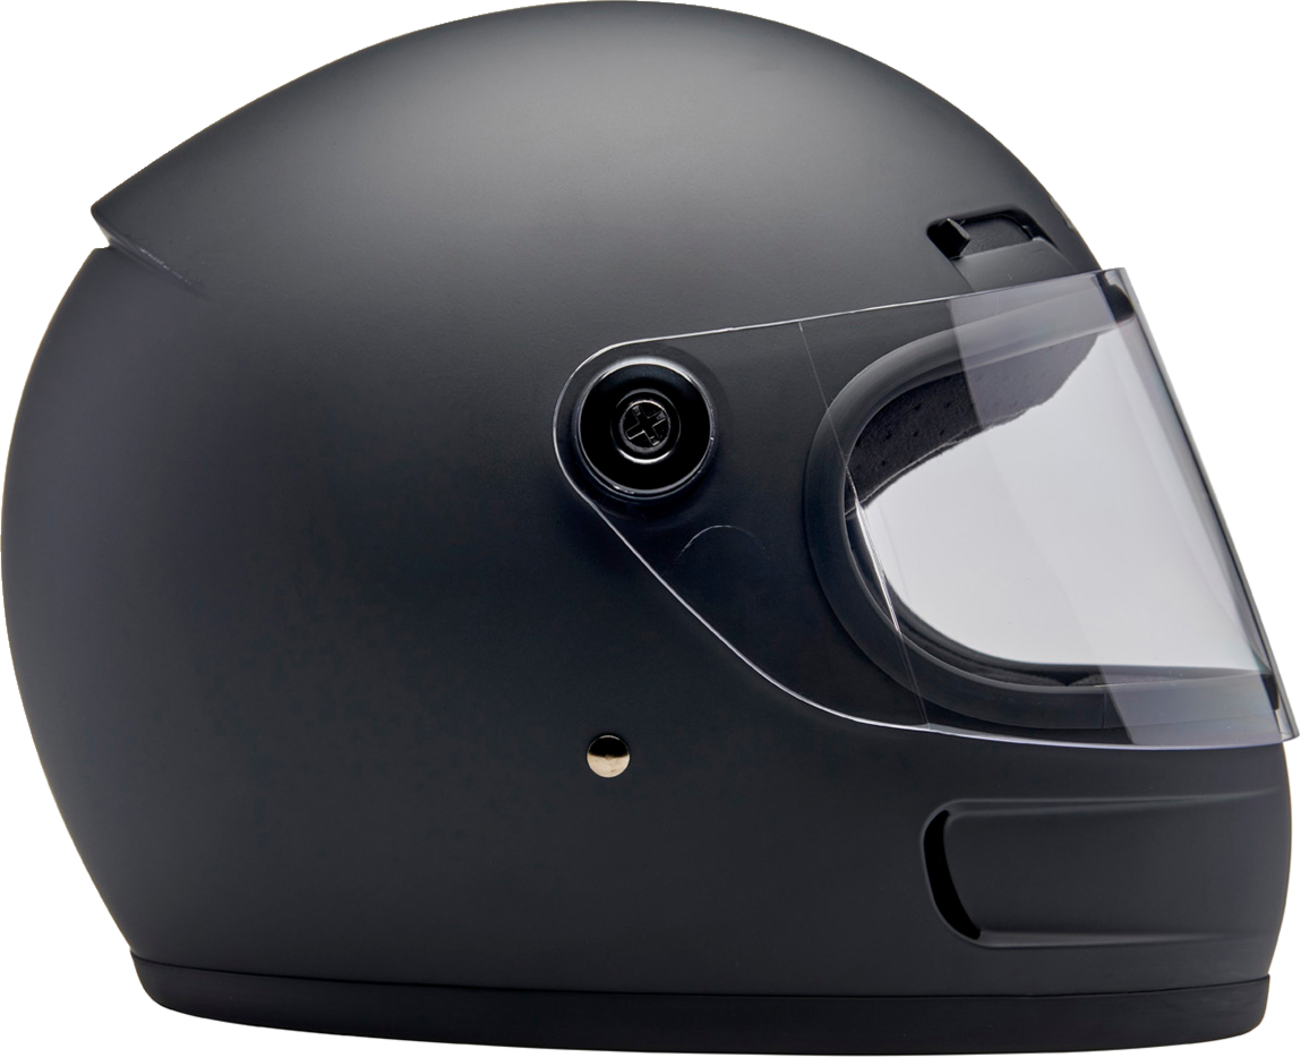 BILTWELL Gringo SV Helmet - Flat Black - XS 1006-201-501